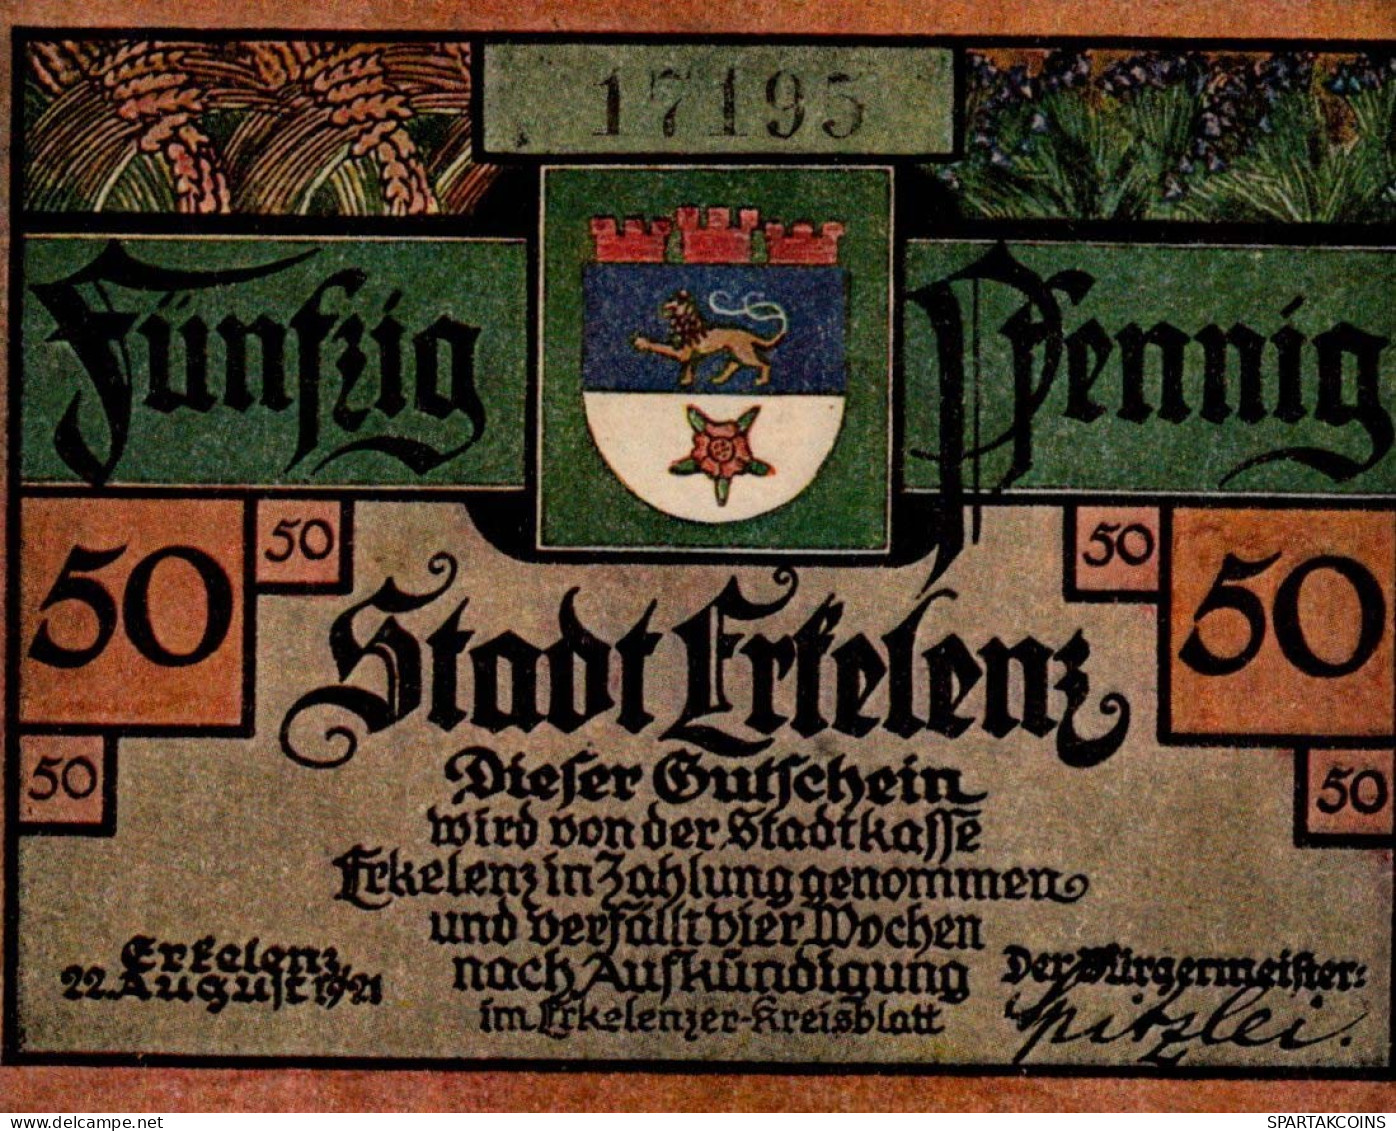 50 PFENNIG 1921 Stadt ERKELENZ Rhine UNC DEUTSCHLAND Notgeld Banknote #PB323 - [11] Local Banknote Issues